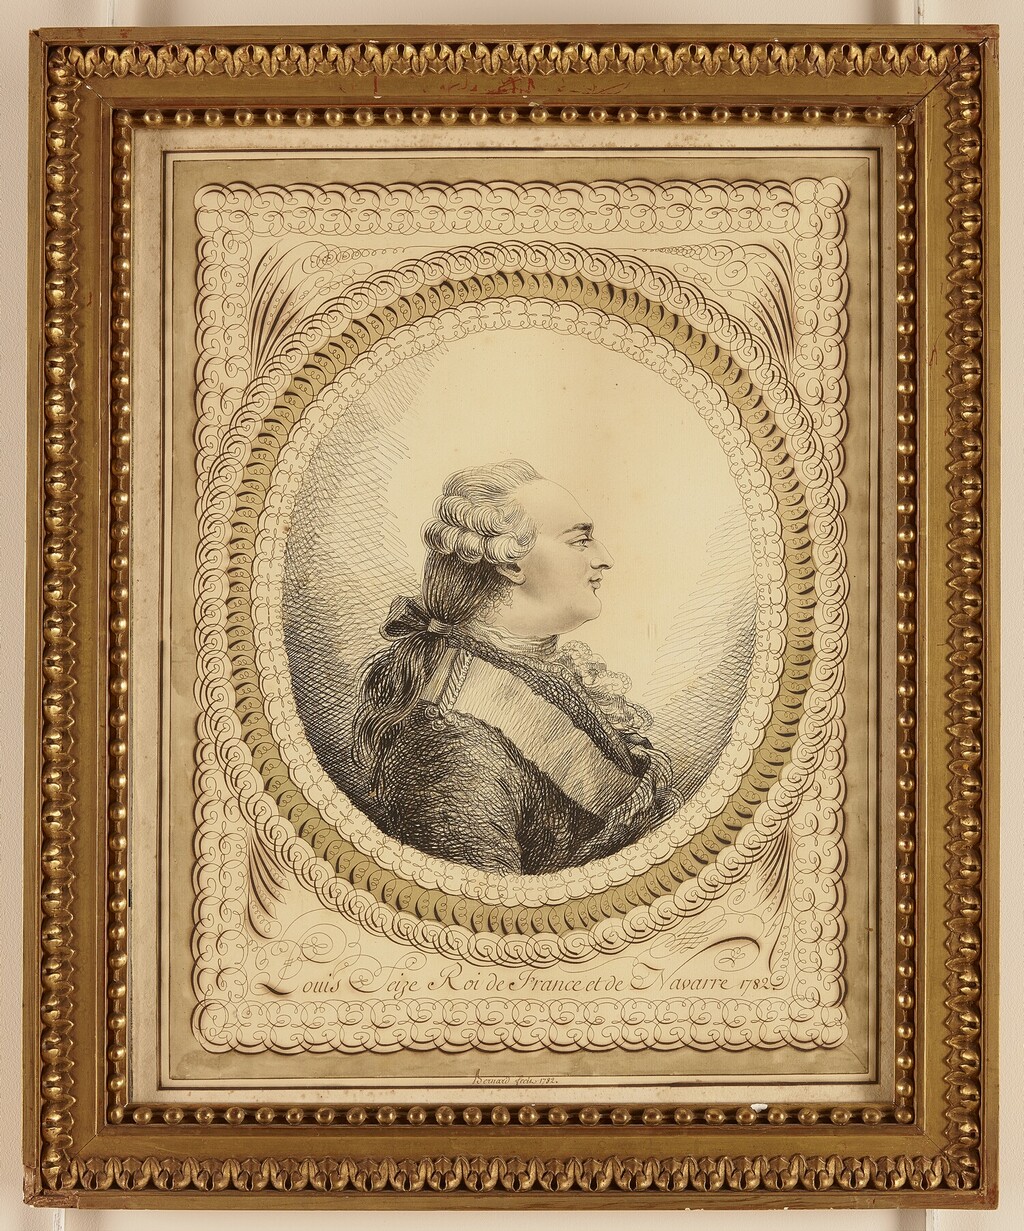 Les Bernard : portraits calligraphiques, dit au trait de plume, de Marie-Antoinette et Louis XVI Image218